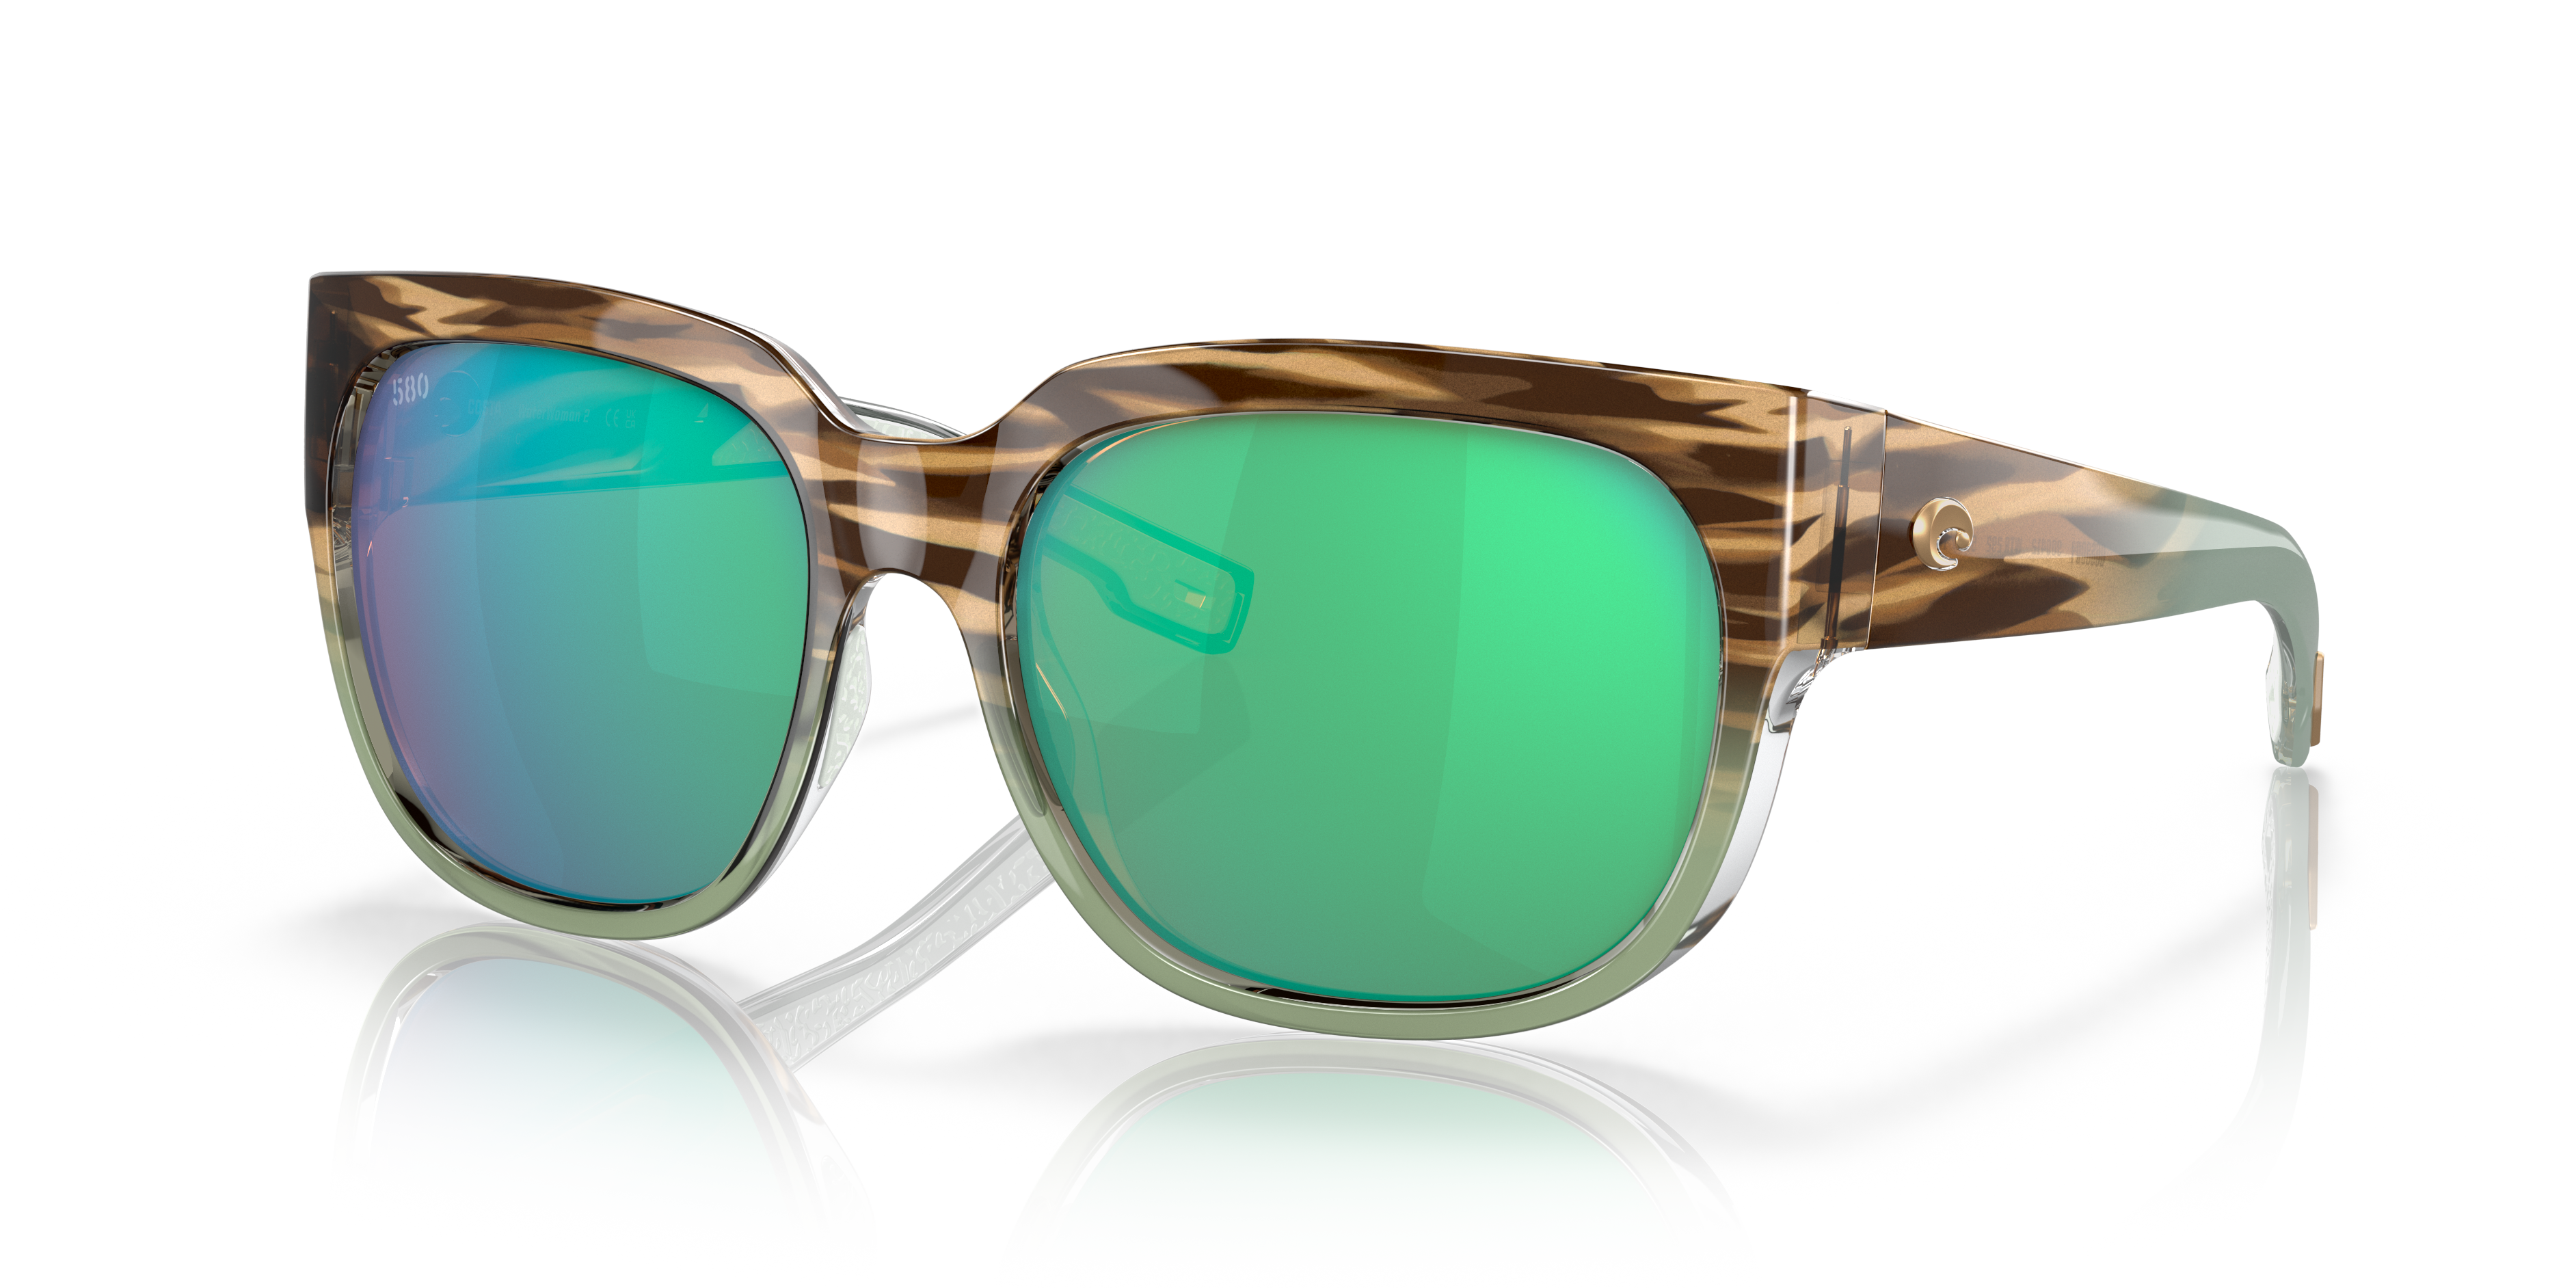 Waterwoman 2 Polarized Sunglasses in Green Mirror | Costa Del Mar®